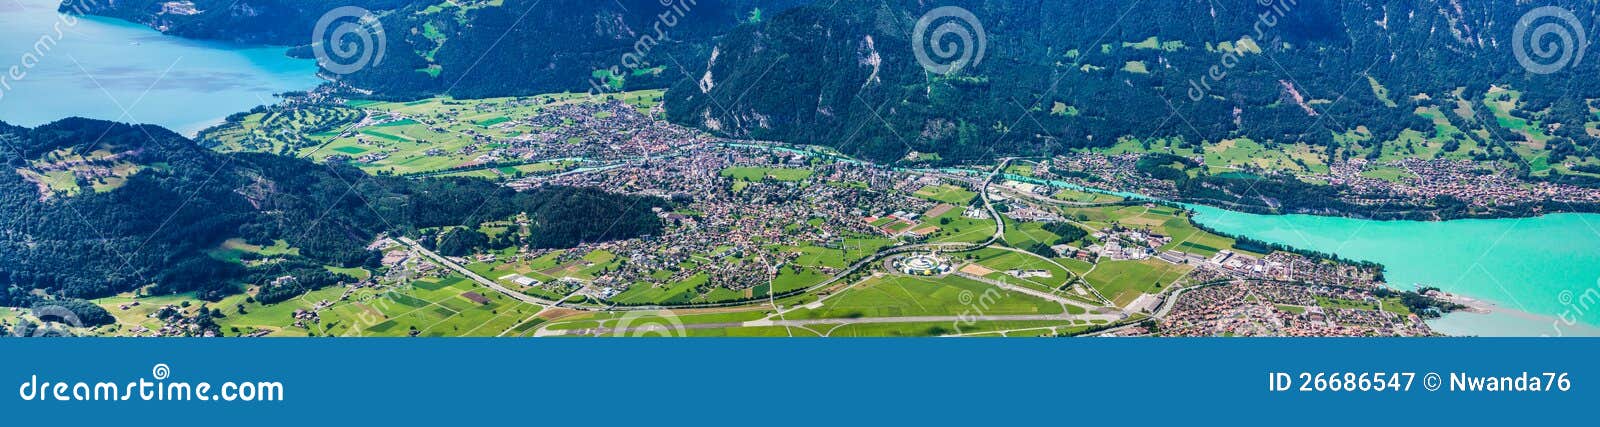 panoramic view of interlaken, switzerland